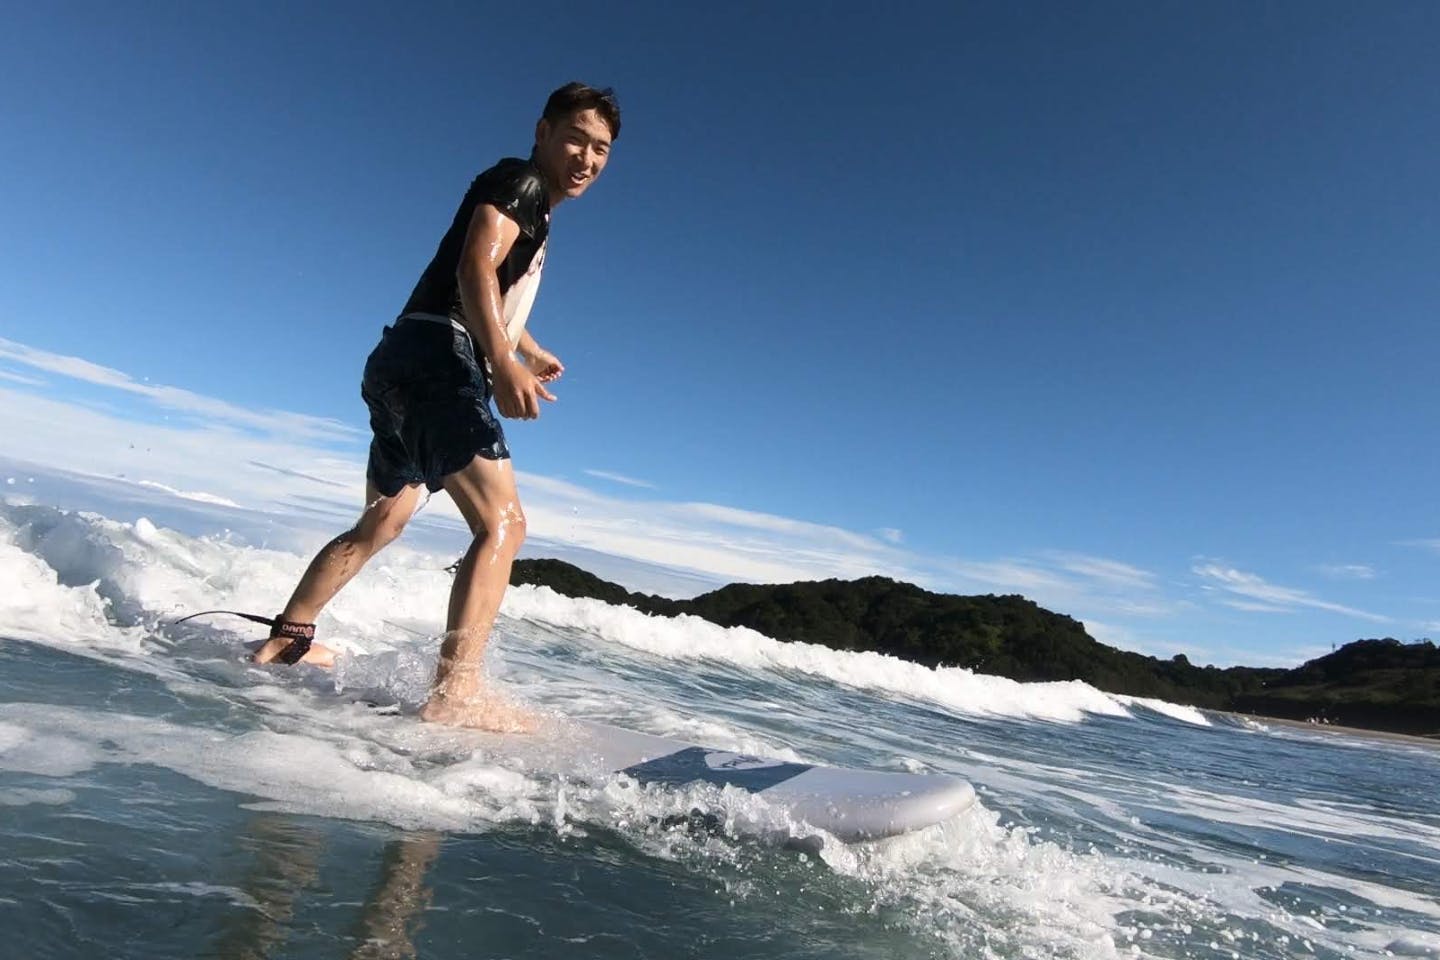 SURF SHOP MORE（サーフショップ モア） (東洋町（安芸郡） サーフィン体験)の「【高知・生見海岸・サーフィン】西日本有数のサーフポイント生見海岸でサーフィン体験！コンスタントにくる波をキャッチしよう（約2時間30分）」の画像